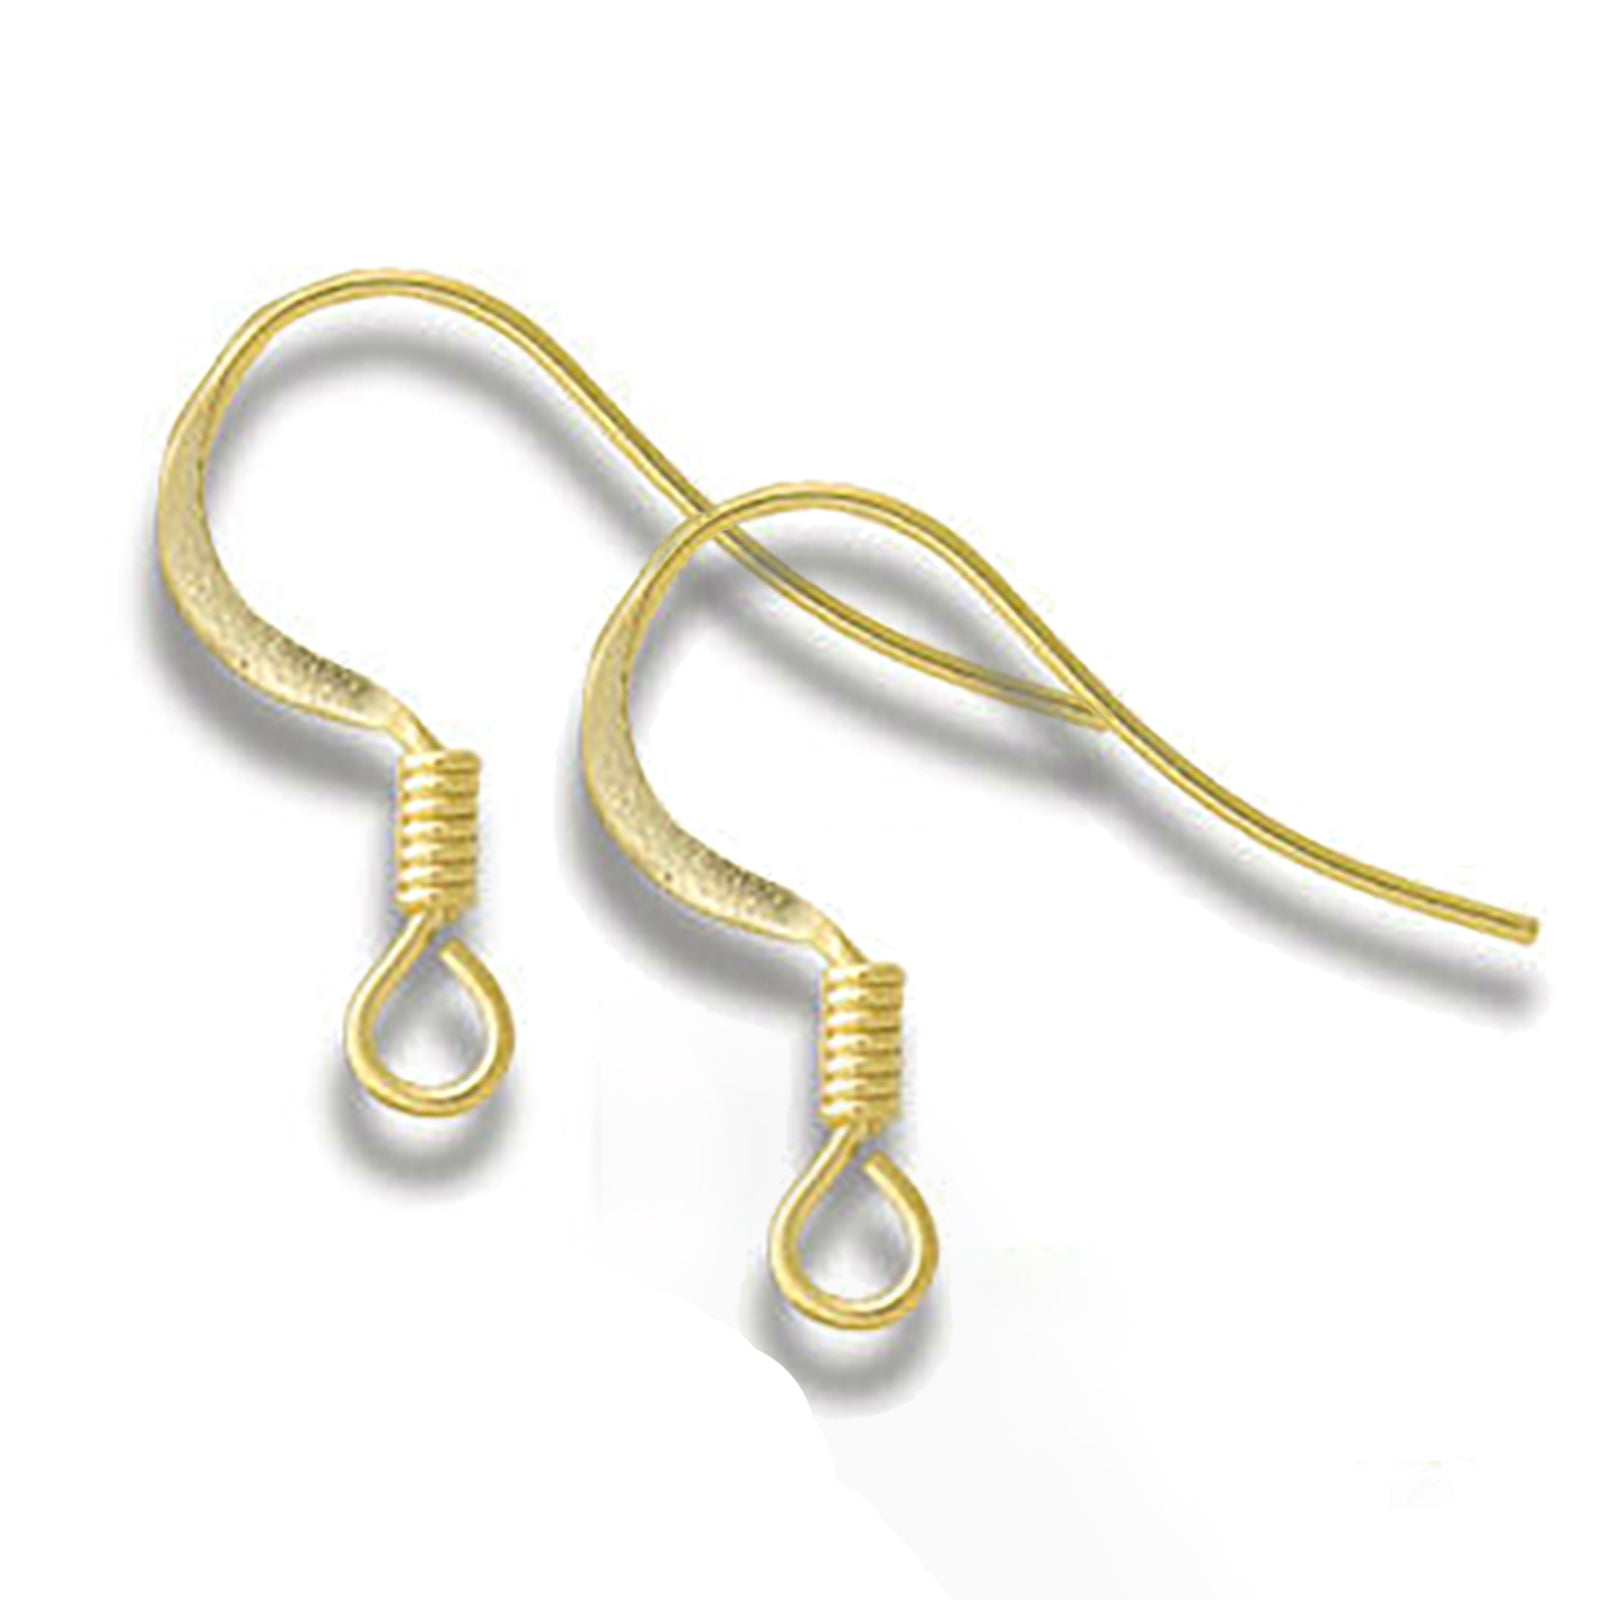 100x Gold Earrings Ear Wire Metal French Shepherd Hook Findings